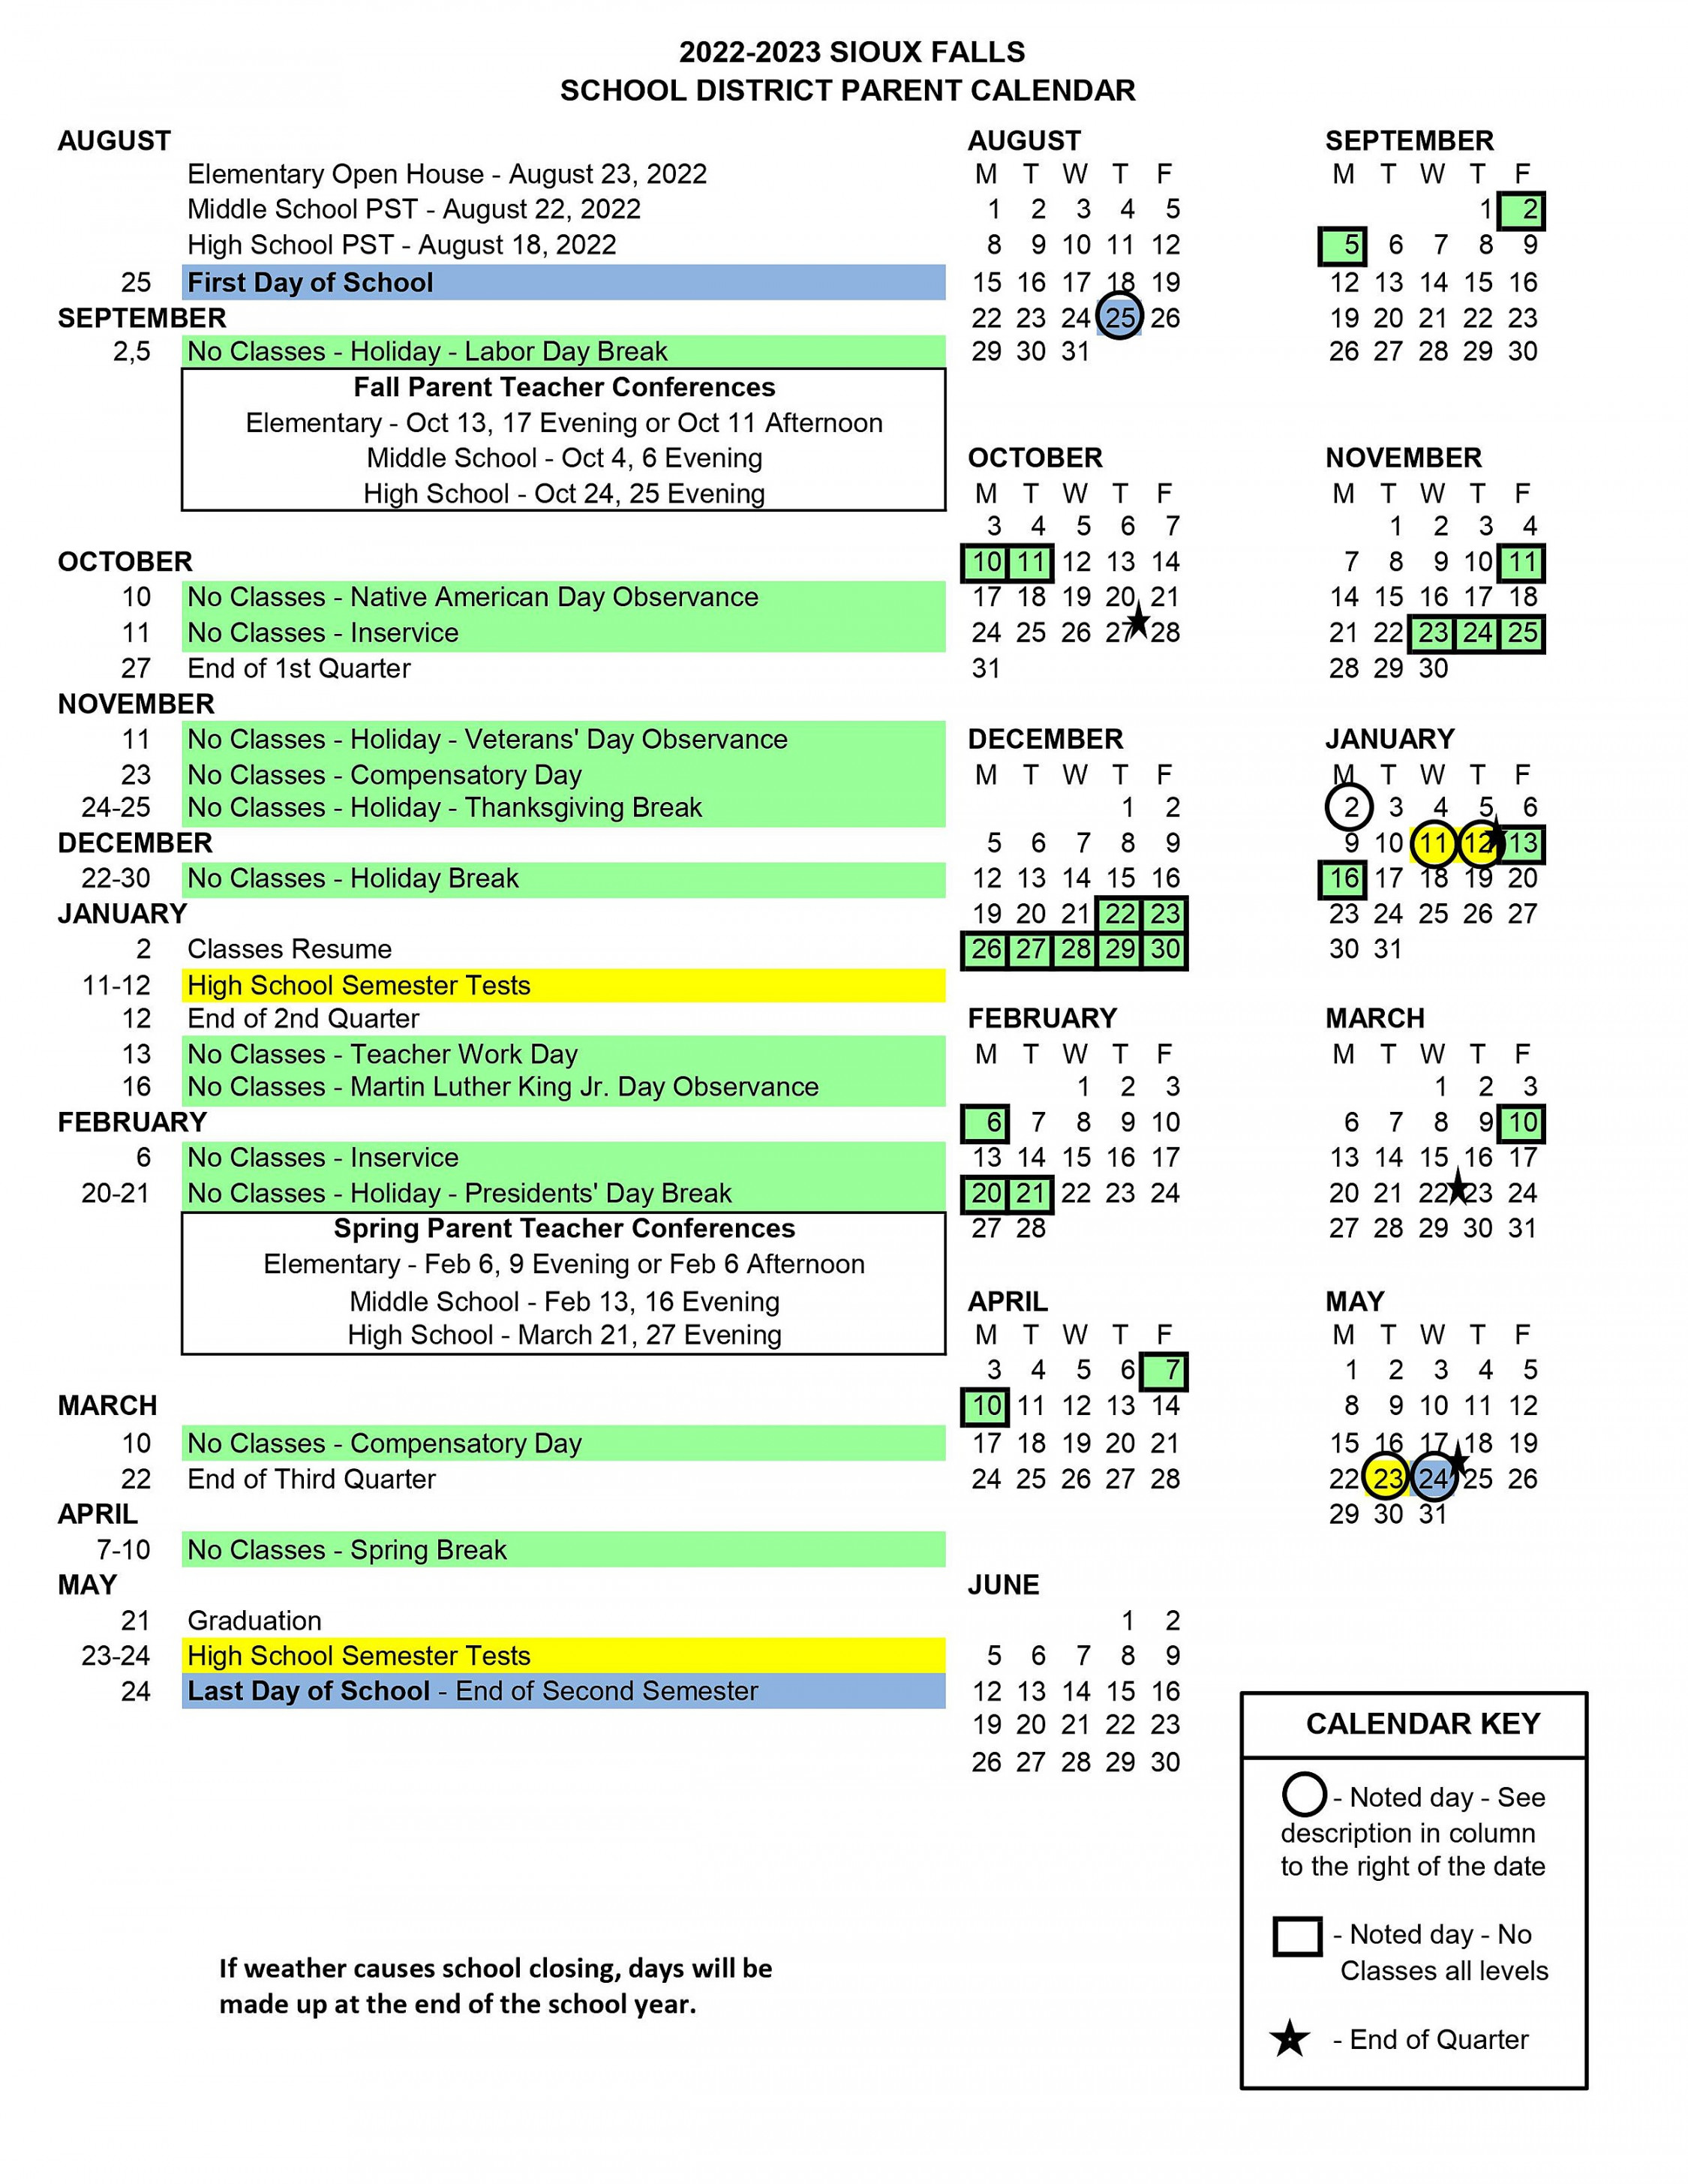 Sioux Falls Public Schools Calendar - prntbl